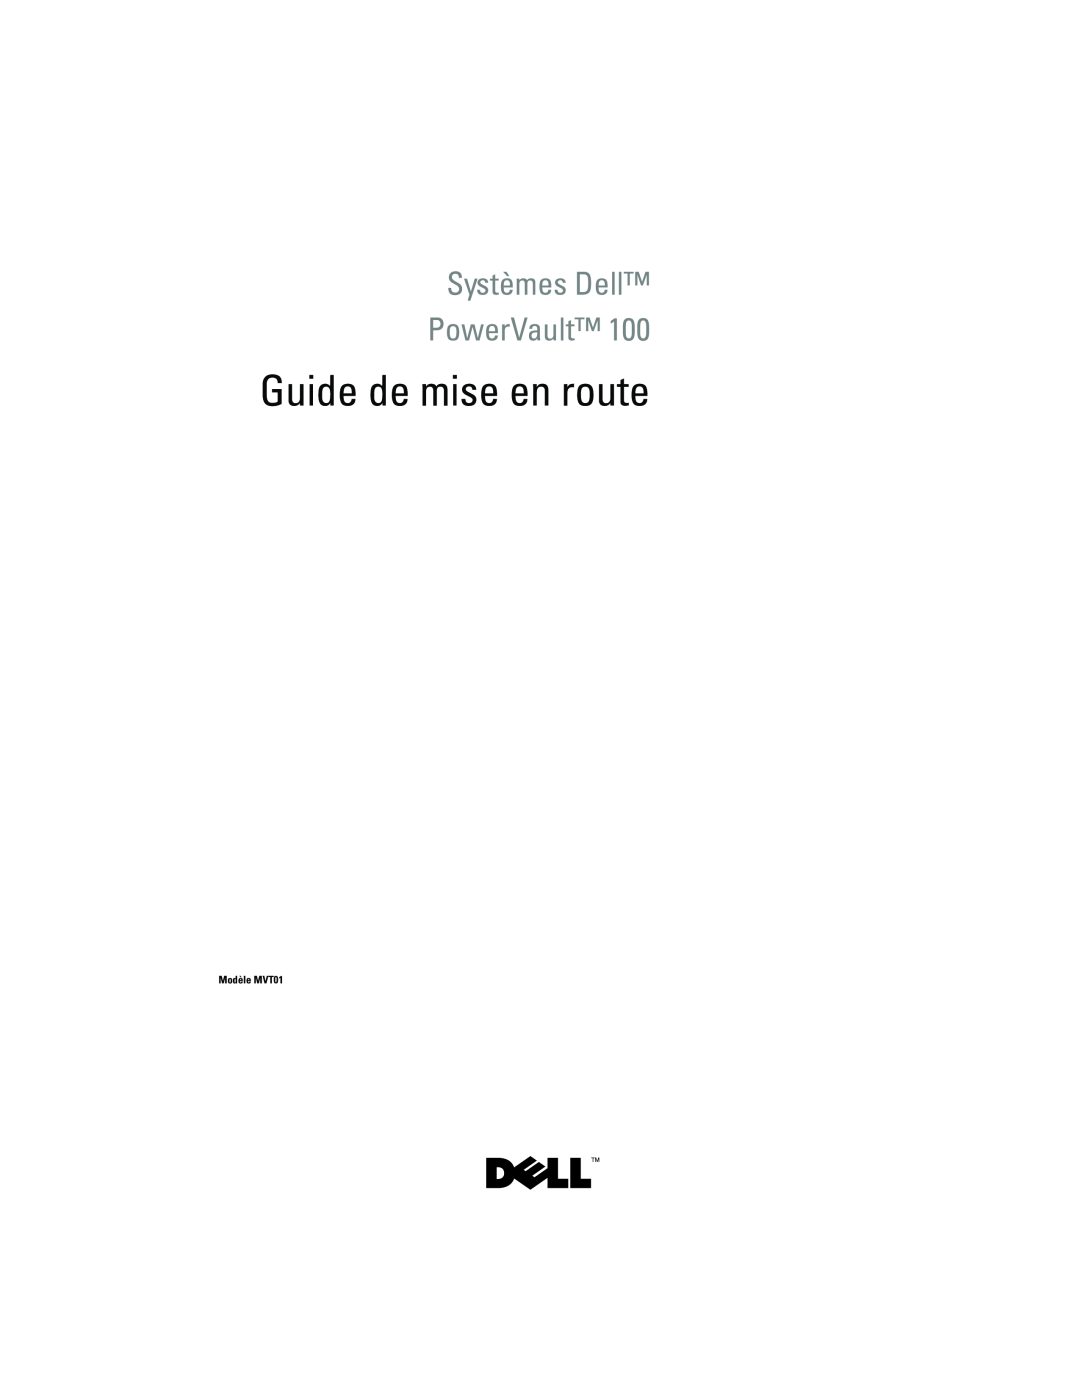 Dell JU892 manual Guide de mise en route, Systèmes Dell PowerVault, Modèle MVT01 